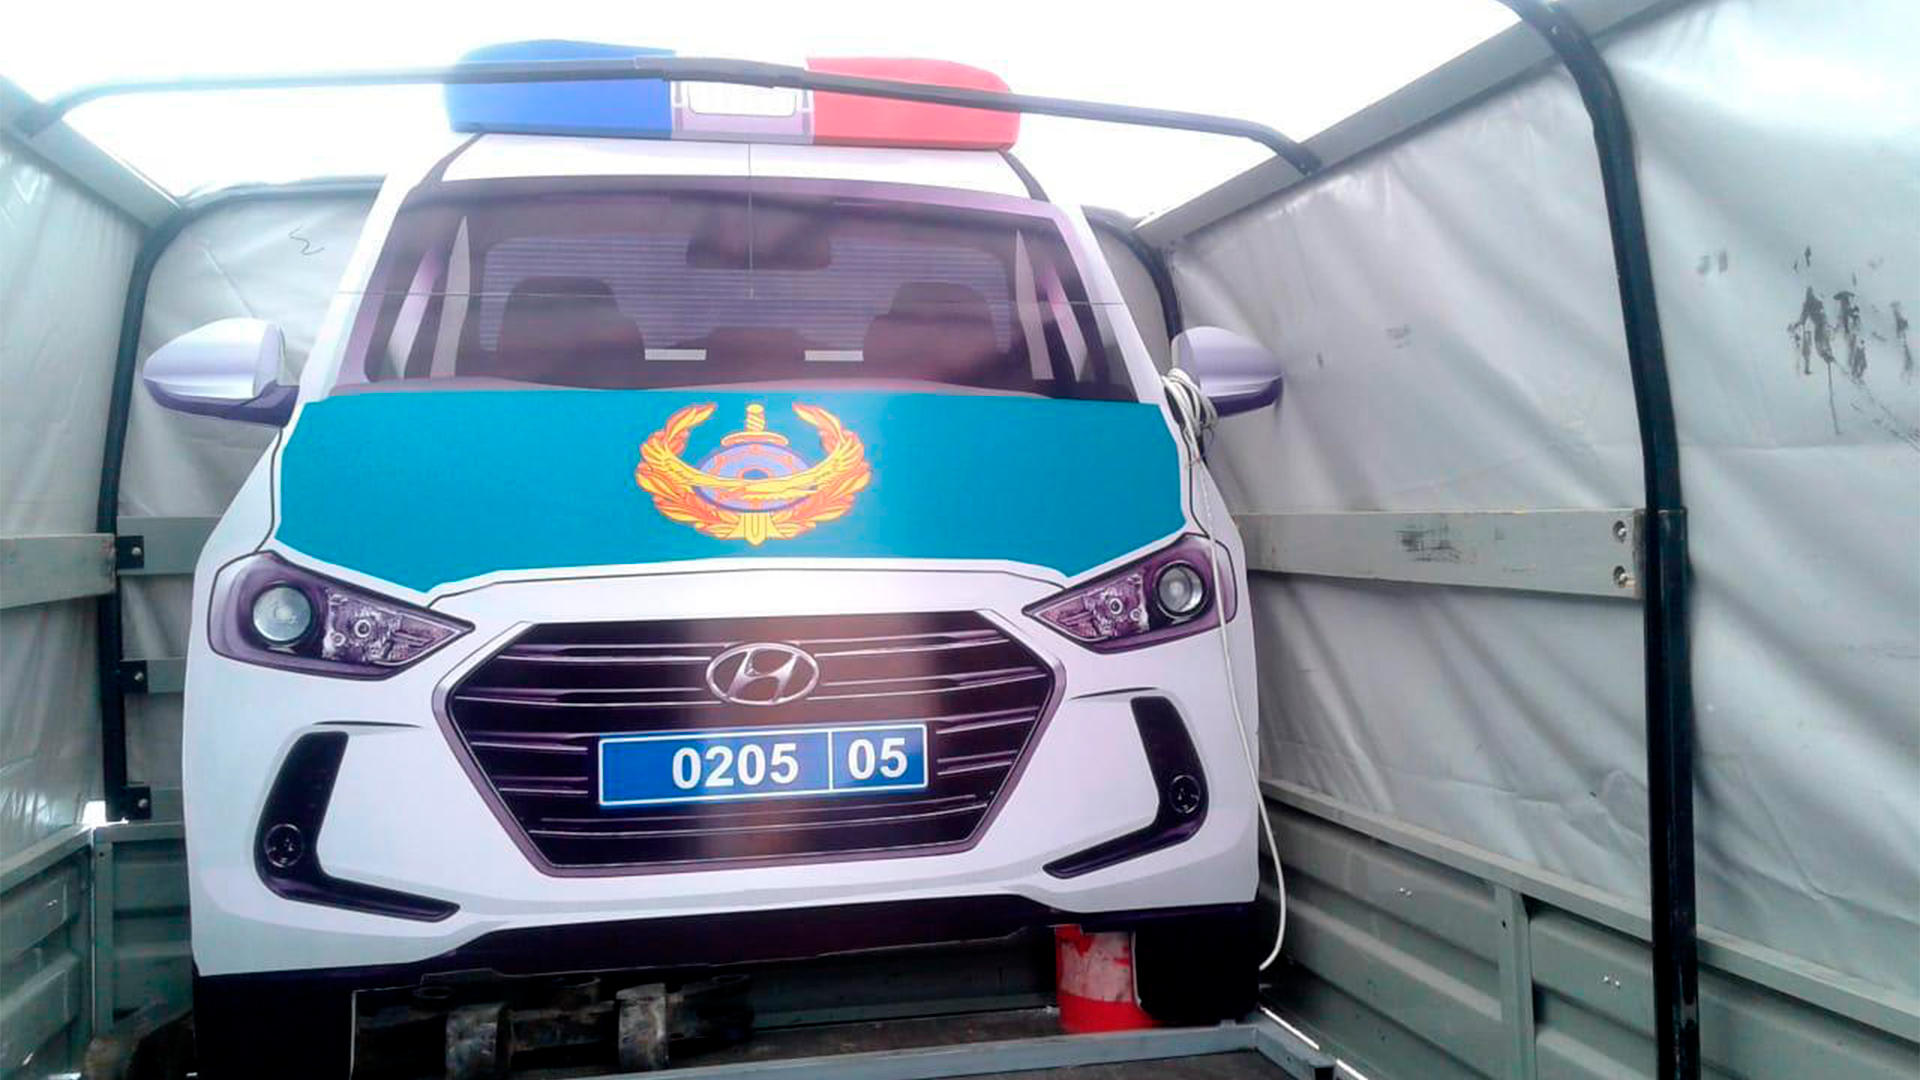 Макеты патрульных Hyundai ставят на трассах в Алматинской и Жамбылской областях